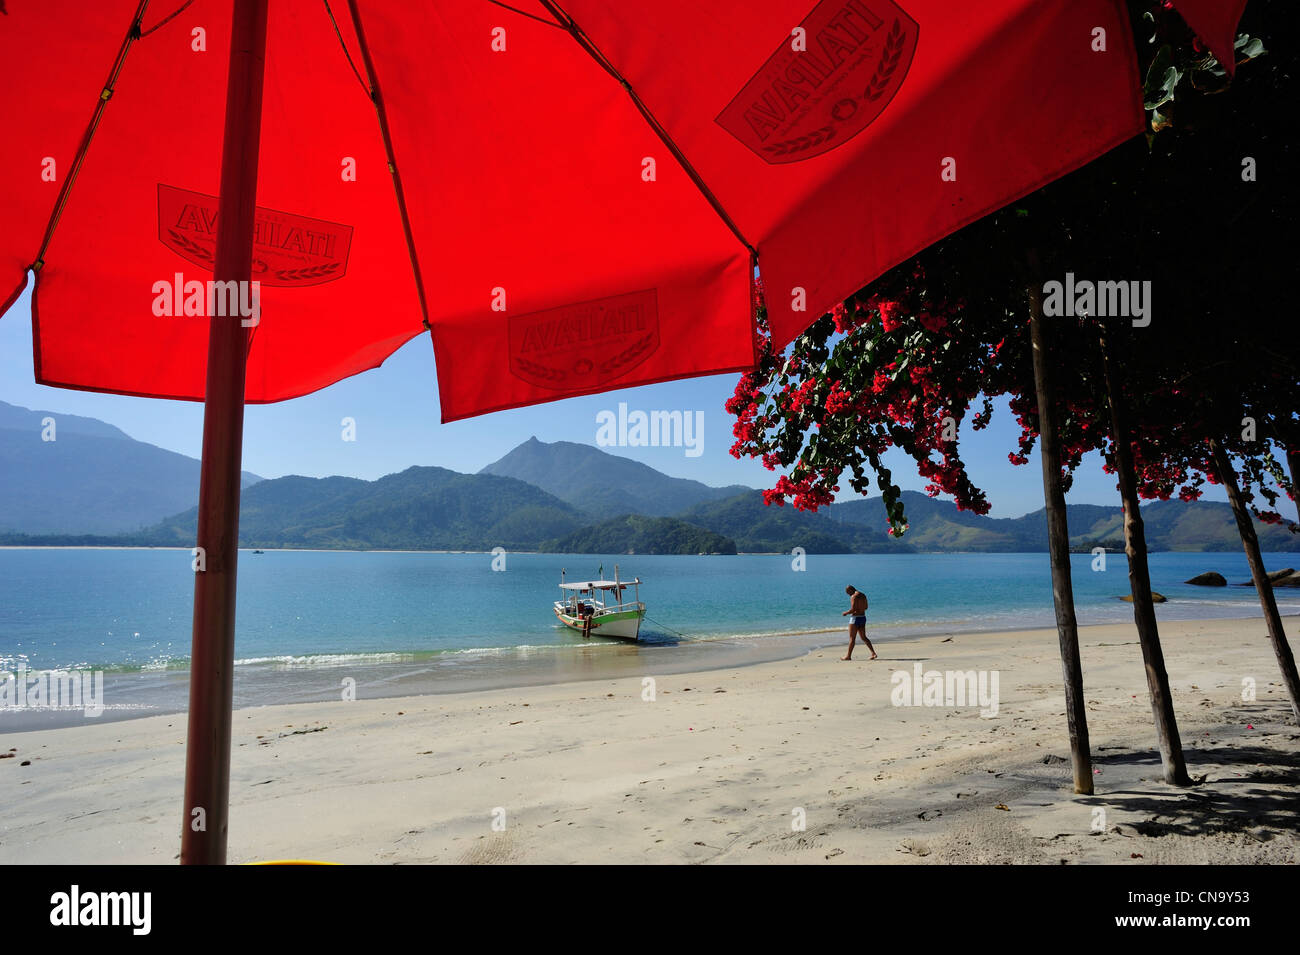 Brazil, Rio de Janeiro State, Paraty, Pelado island, the beach Stock Photo